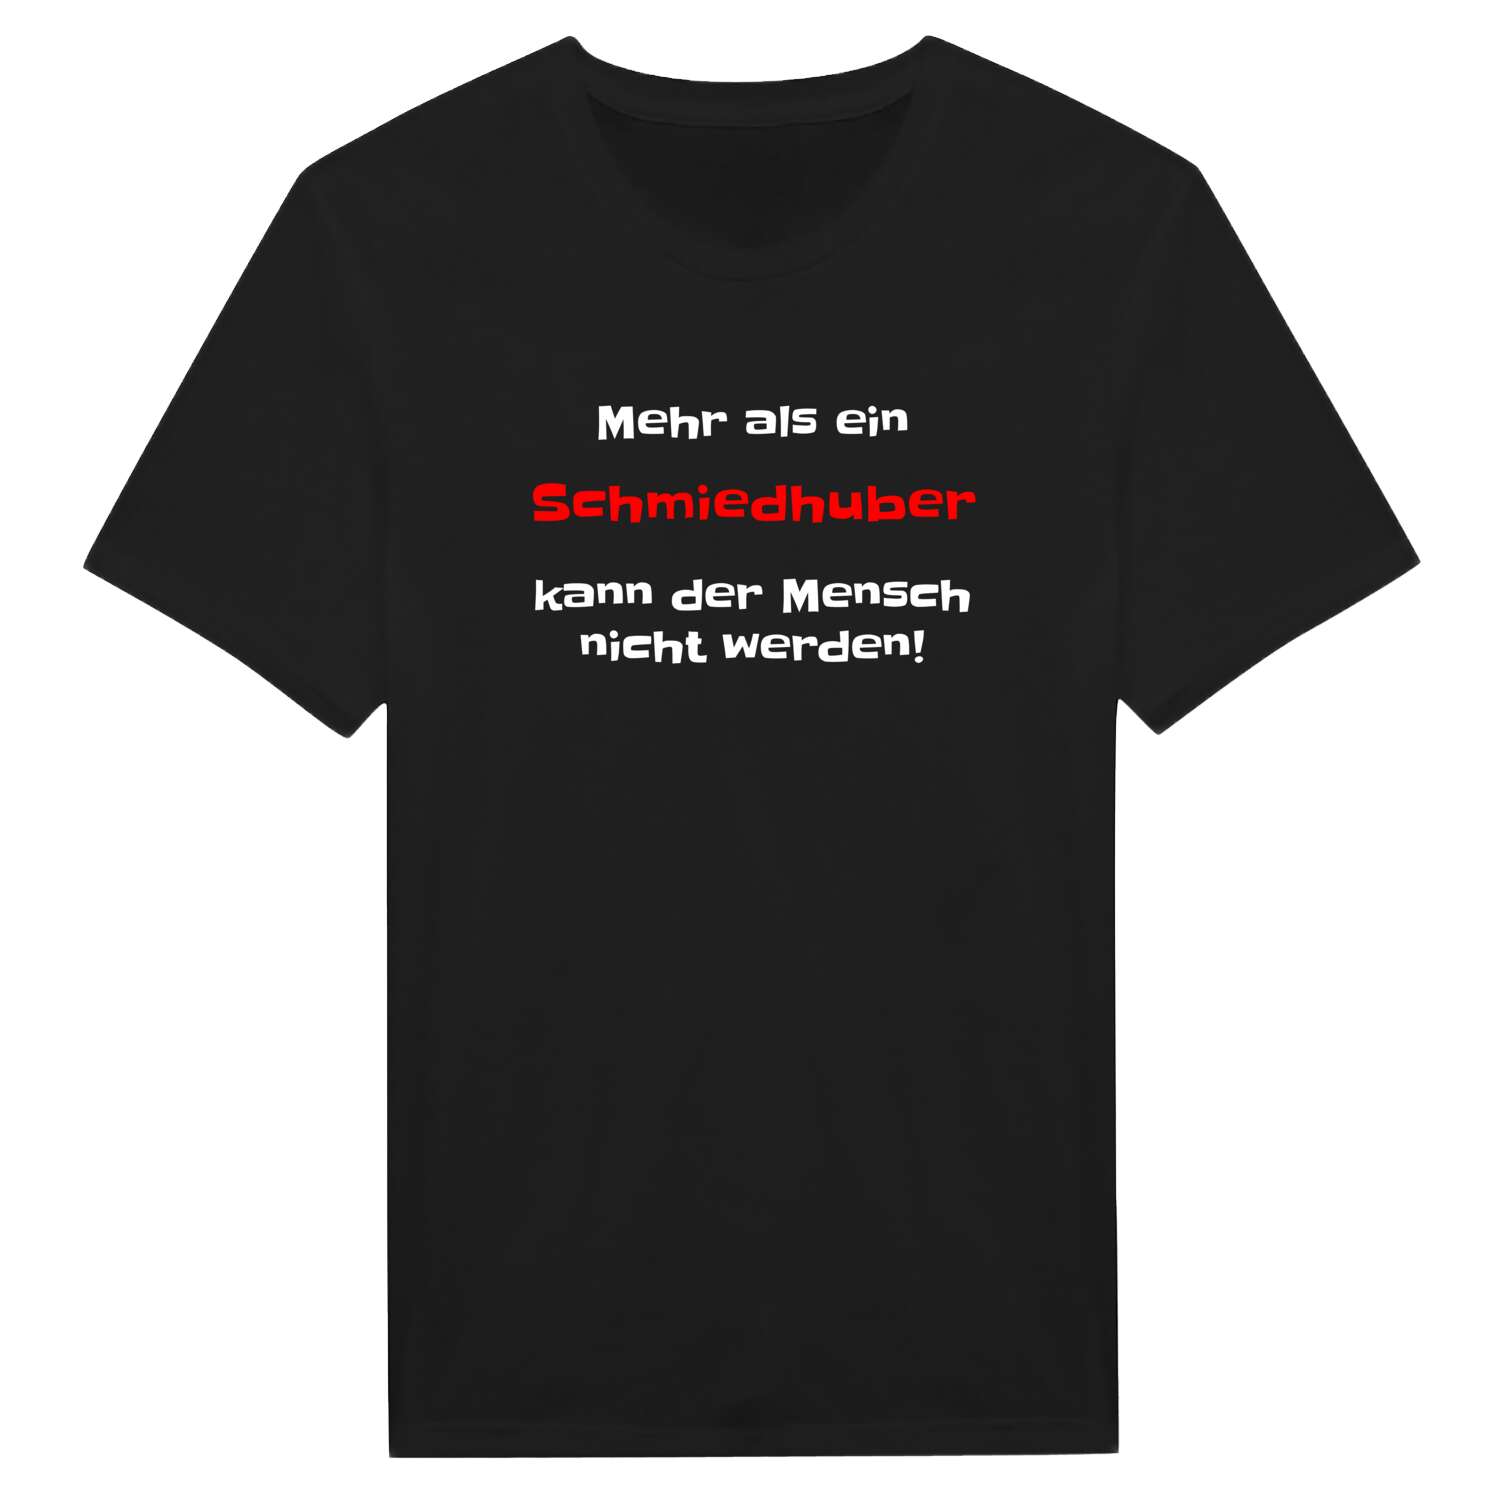 Schmiedhub T-Shirt »Mehr als ein«